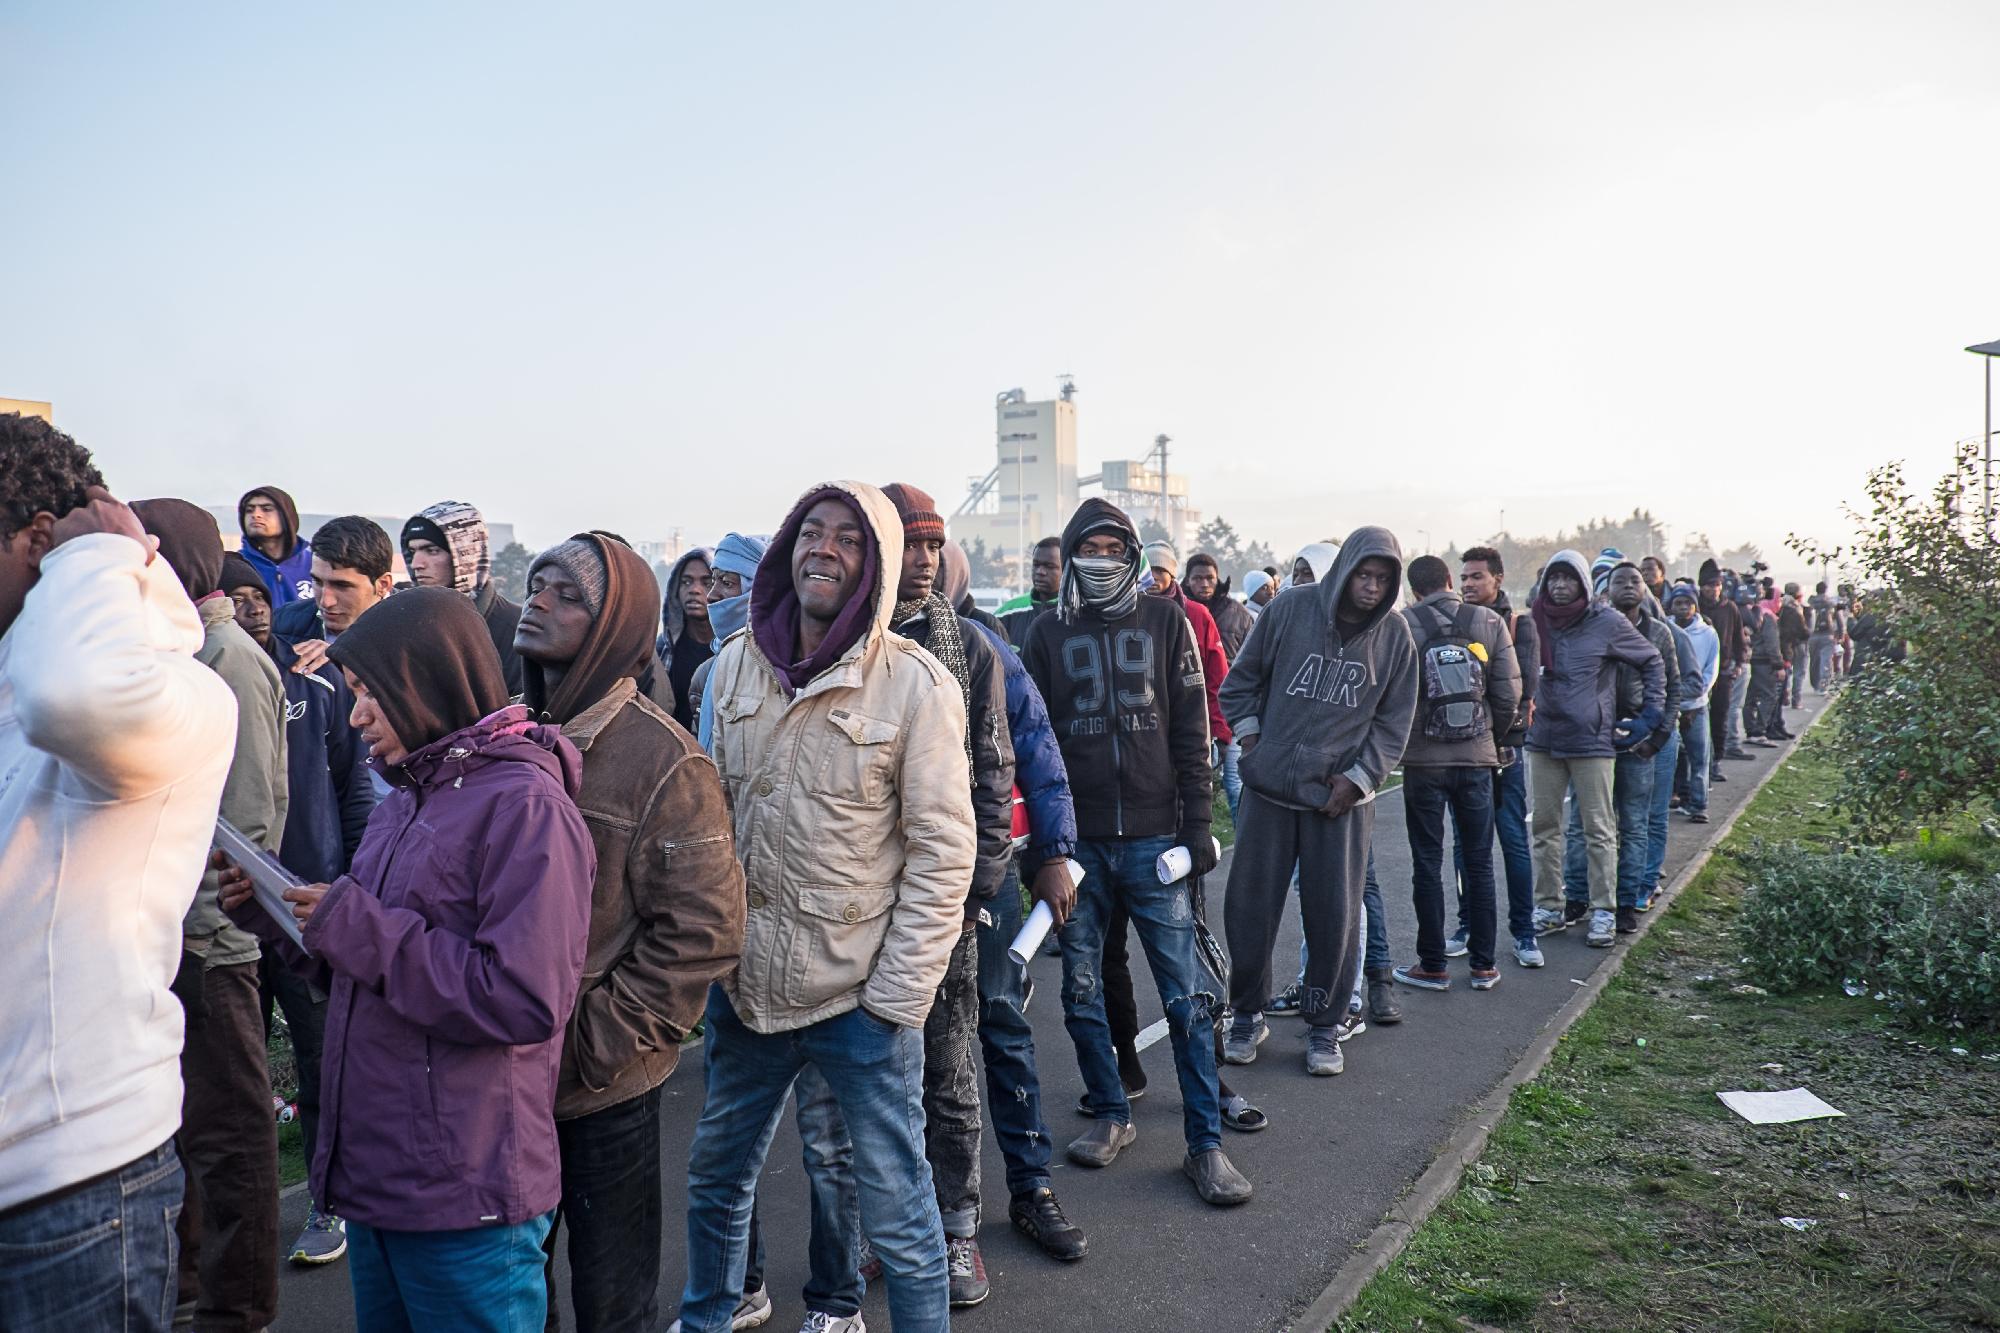 Az EU szerint biztonságos, legális és jól irányított migrációra van szükség